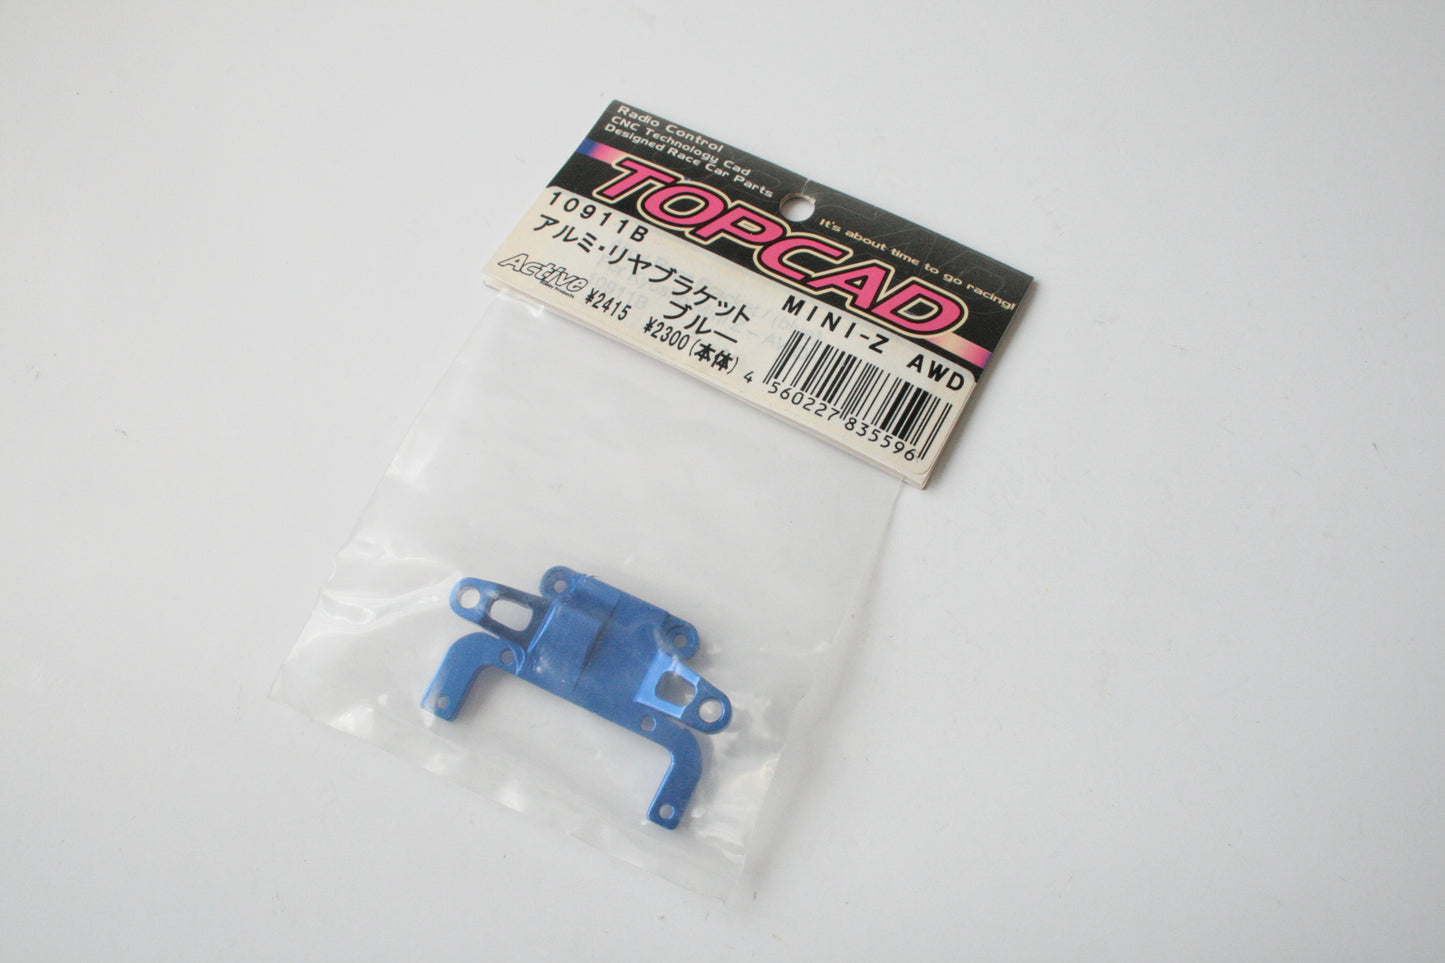 Topcad 10911B Blue Aluminium Rear Blacket For Kyosho Mini-Z AWD